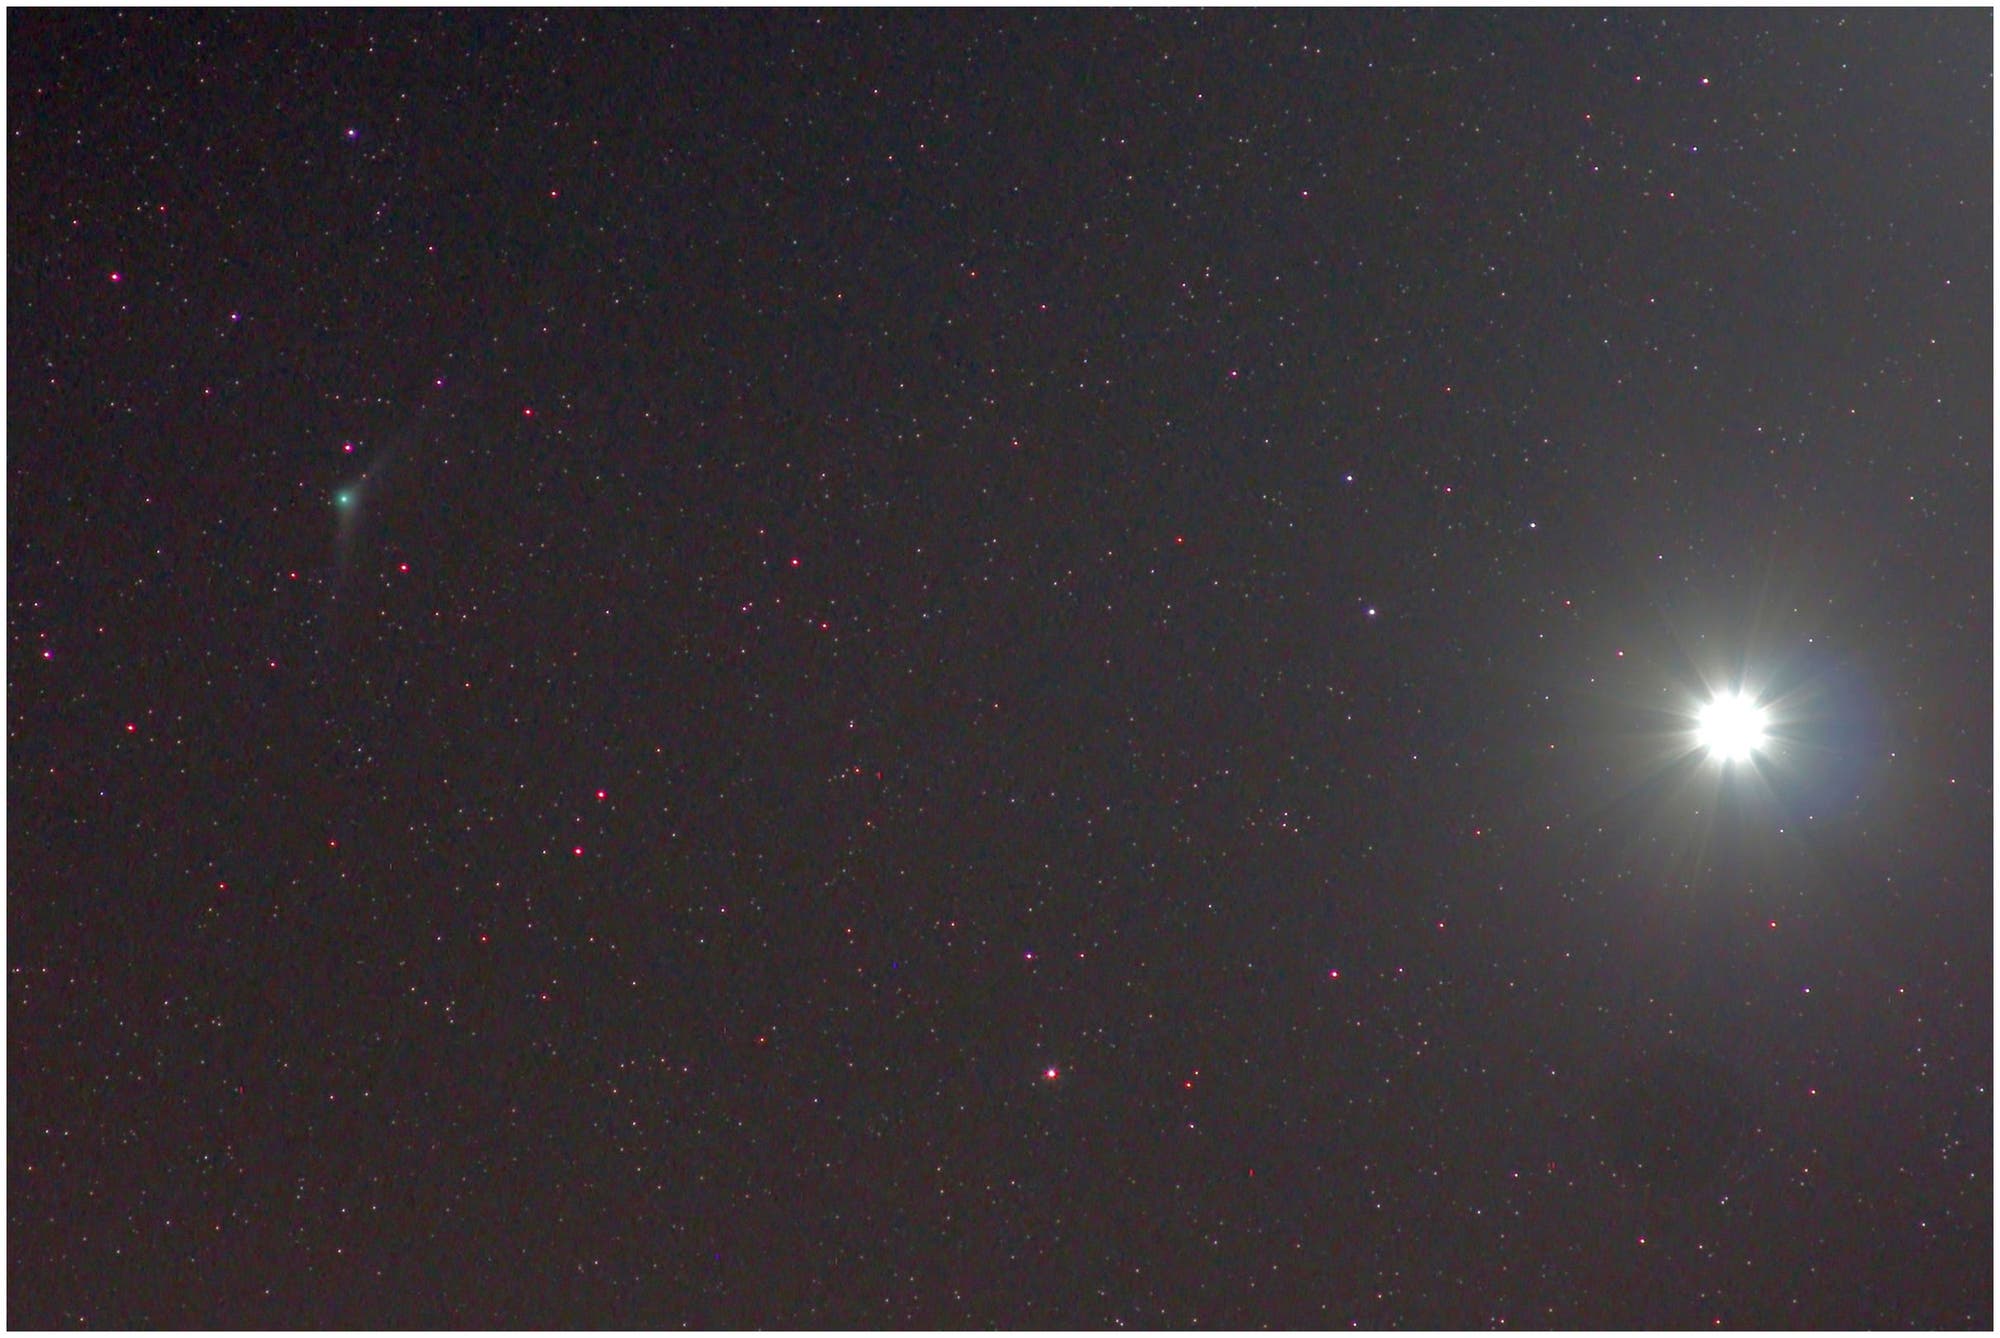 Komet C/2013 US10 (Catalina) mit Venus